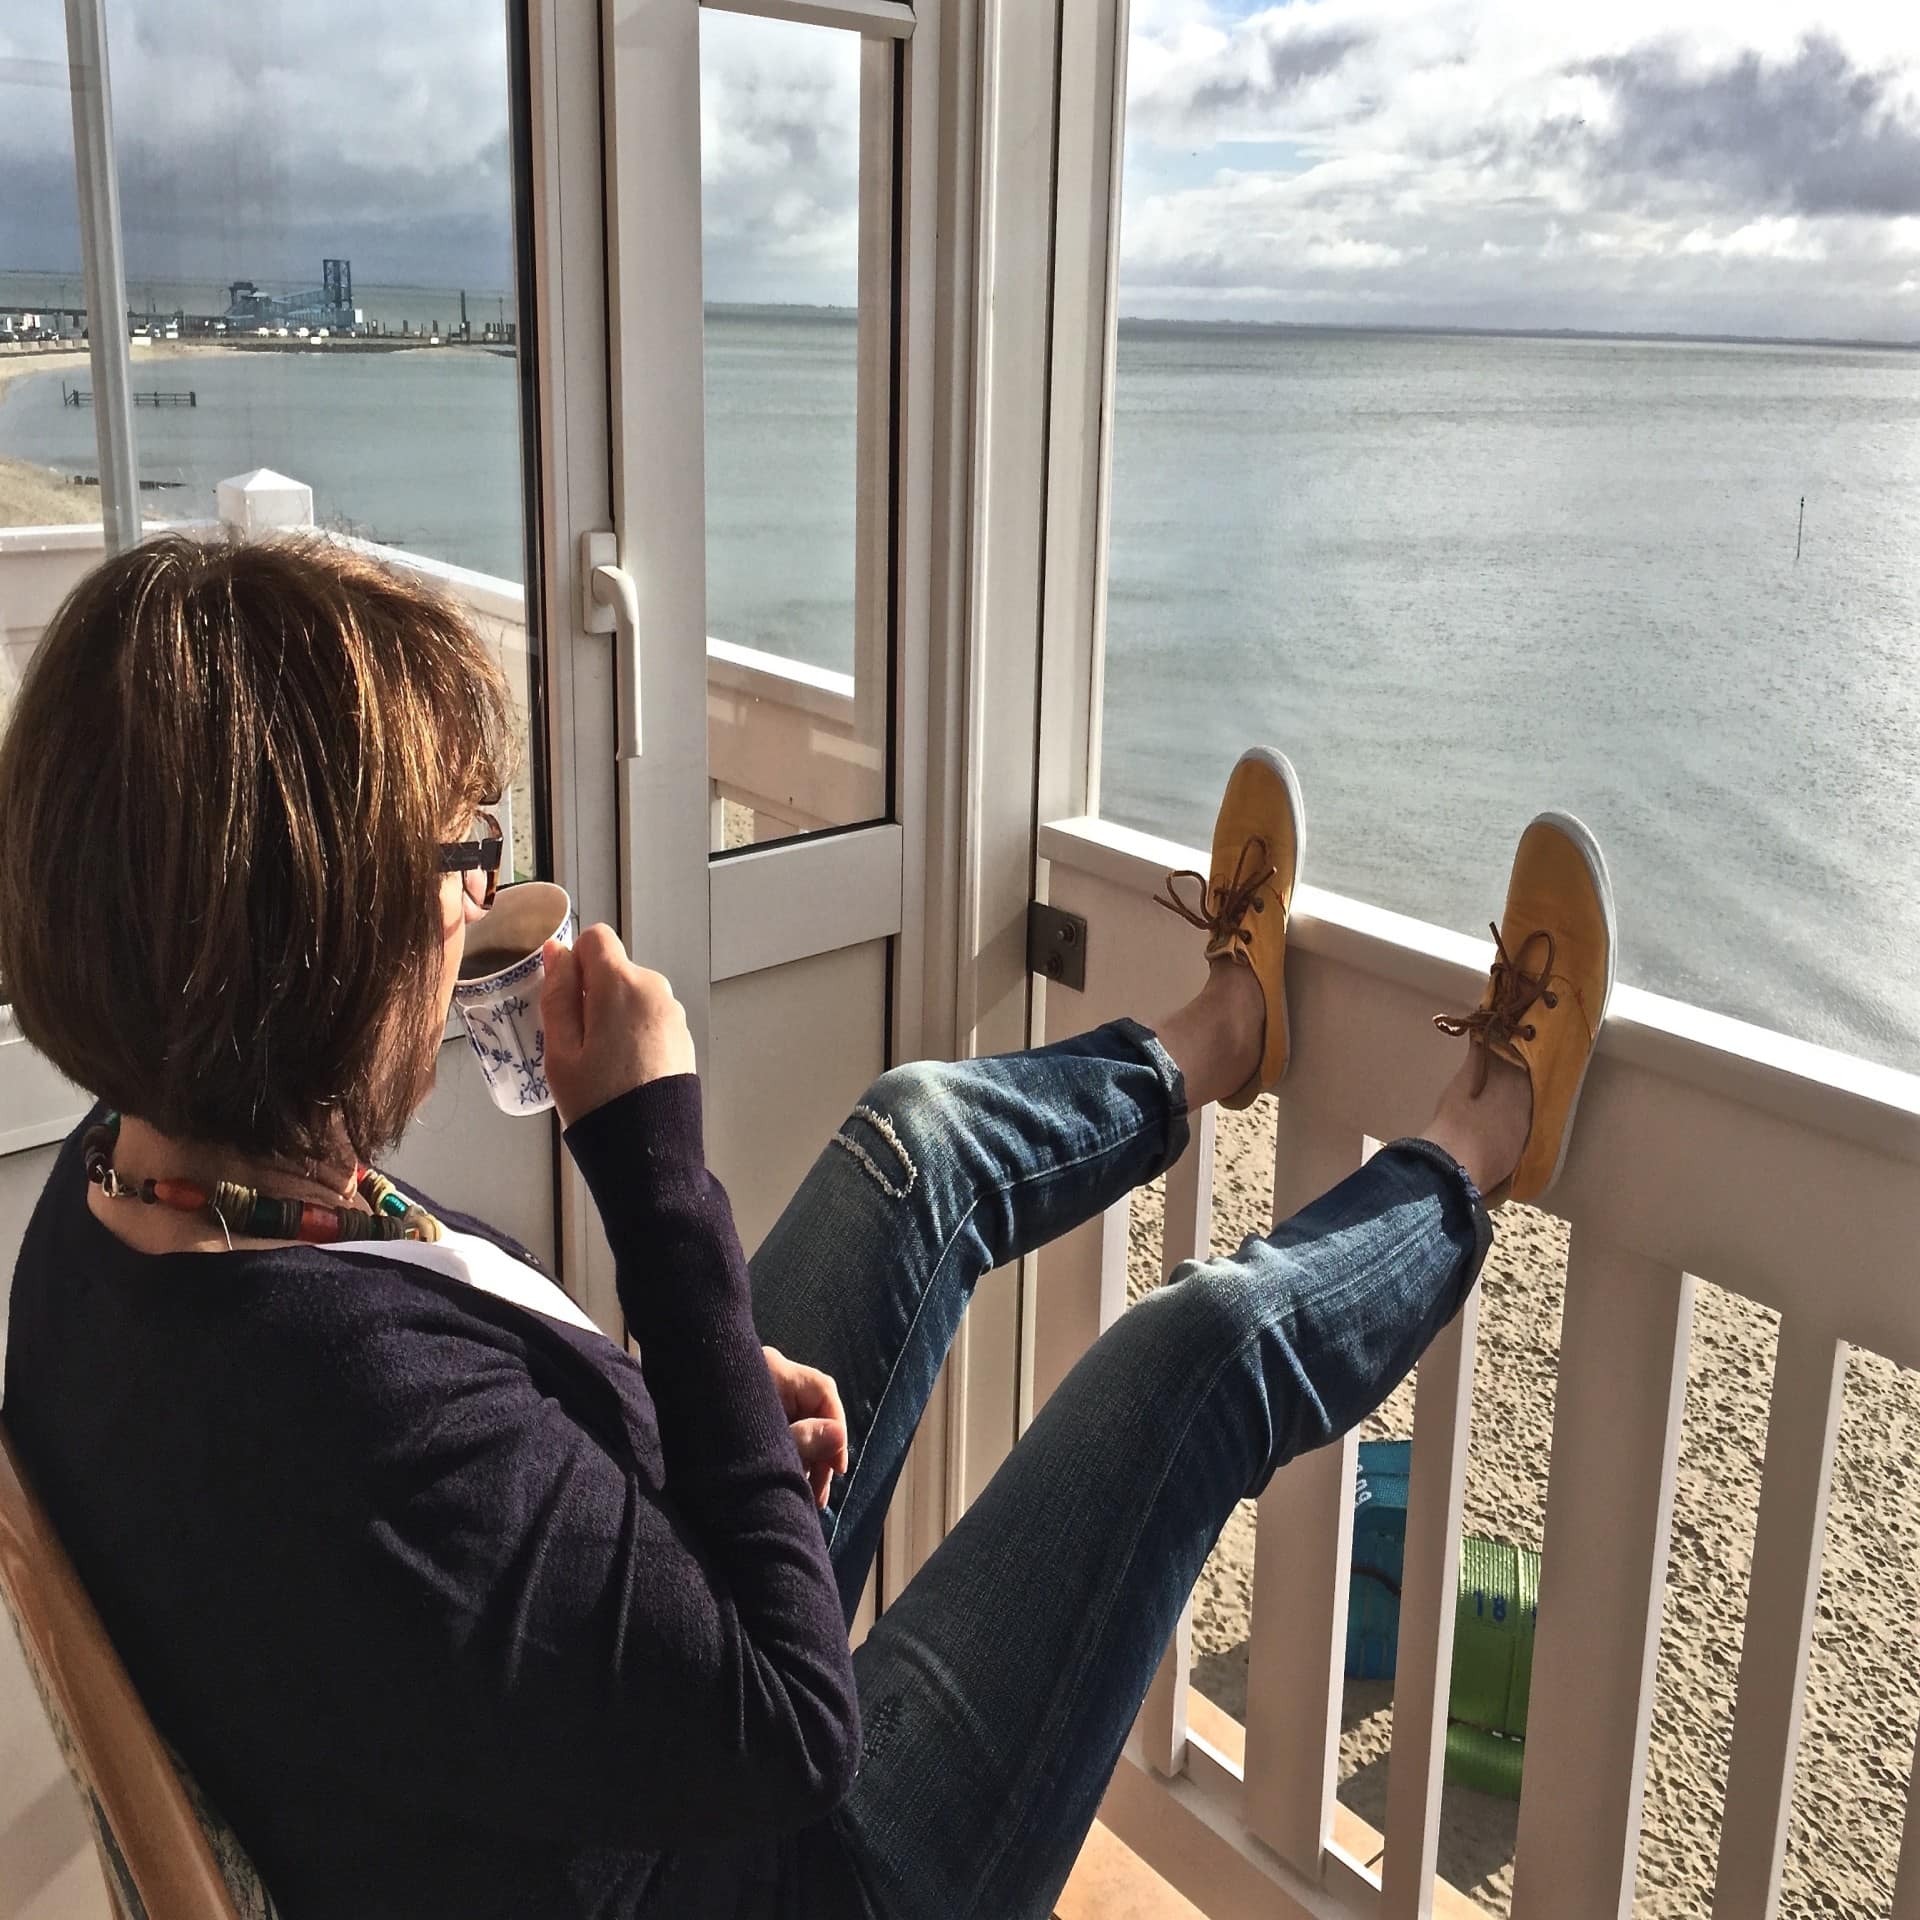 Frau mit Kaffeetasse sitzt auf einem Balkon direkt am Strand und blickt aufs Meer, unten stehen 2 Strandkörbe. 